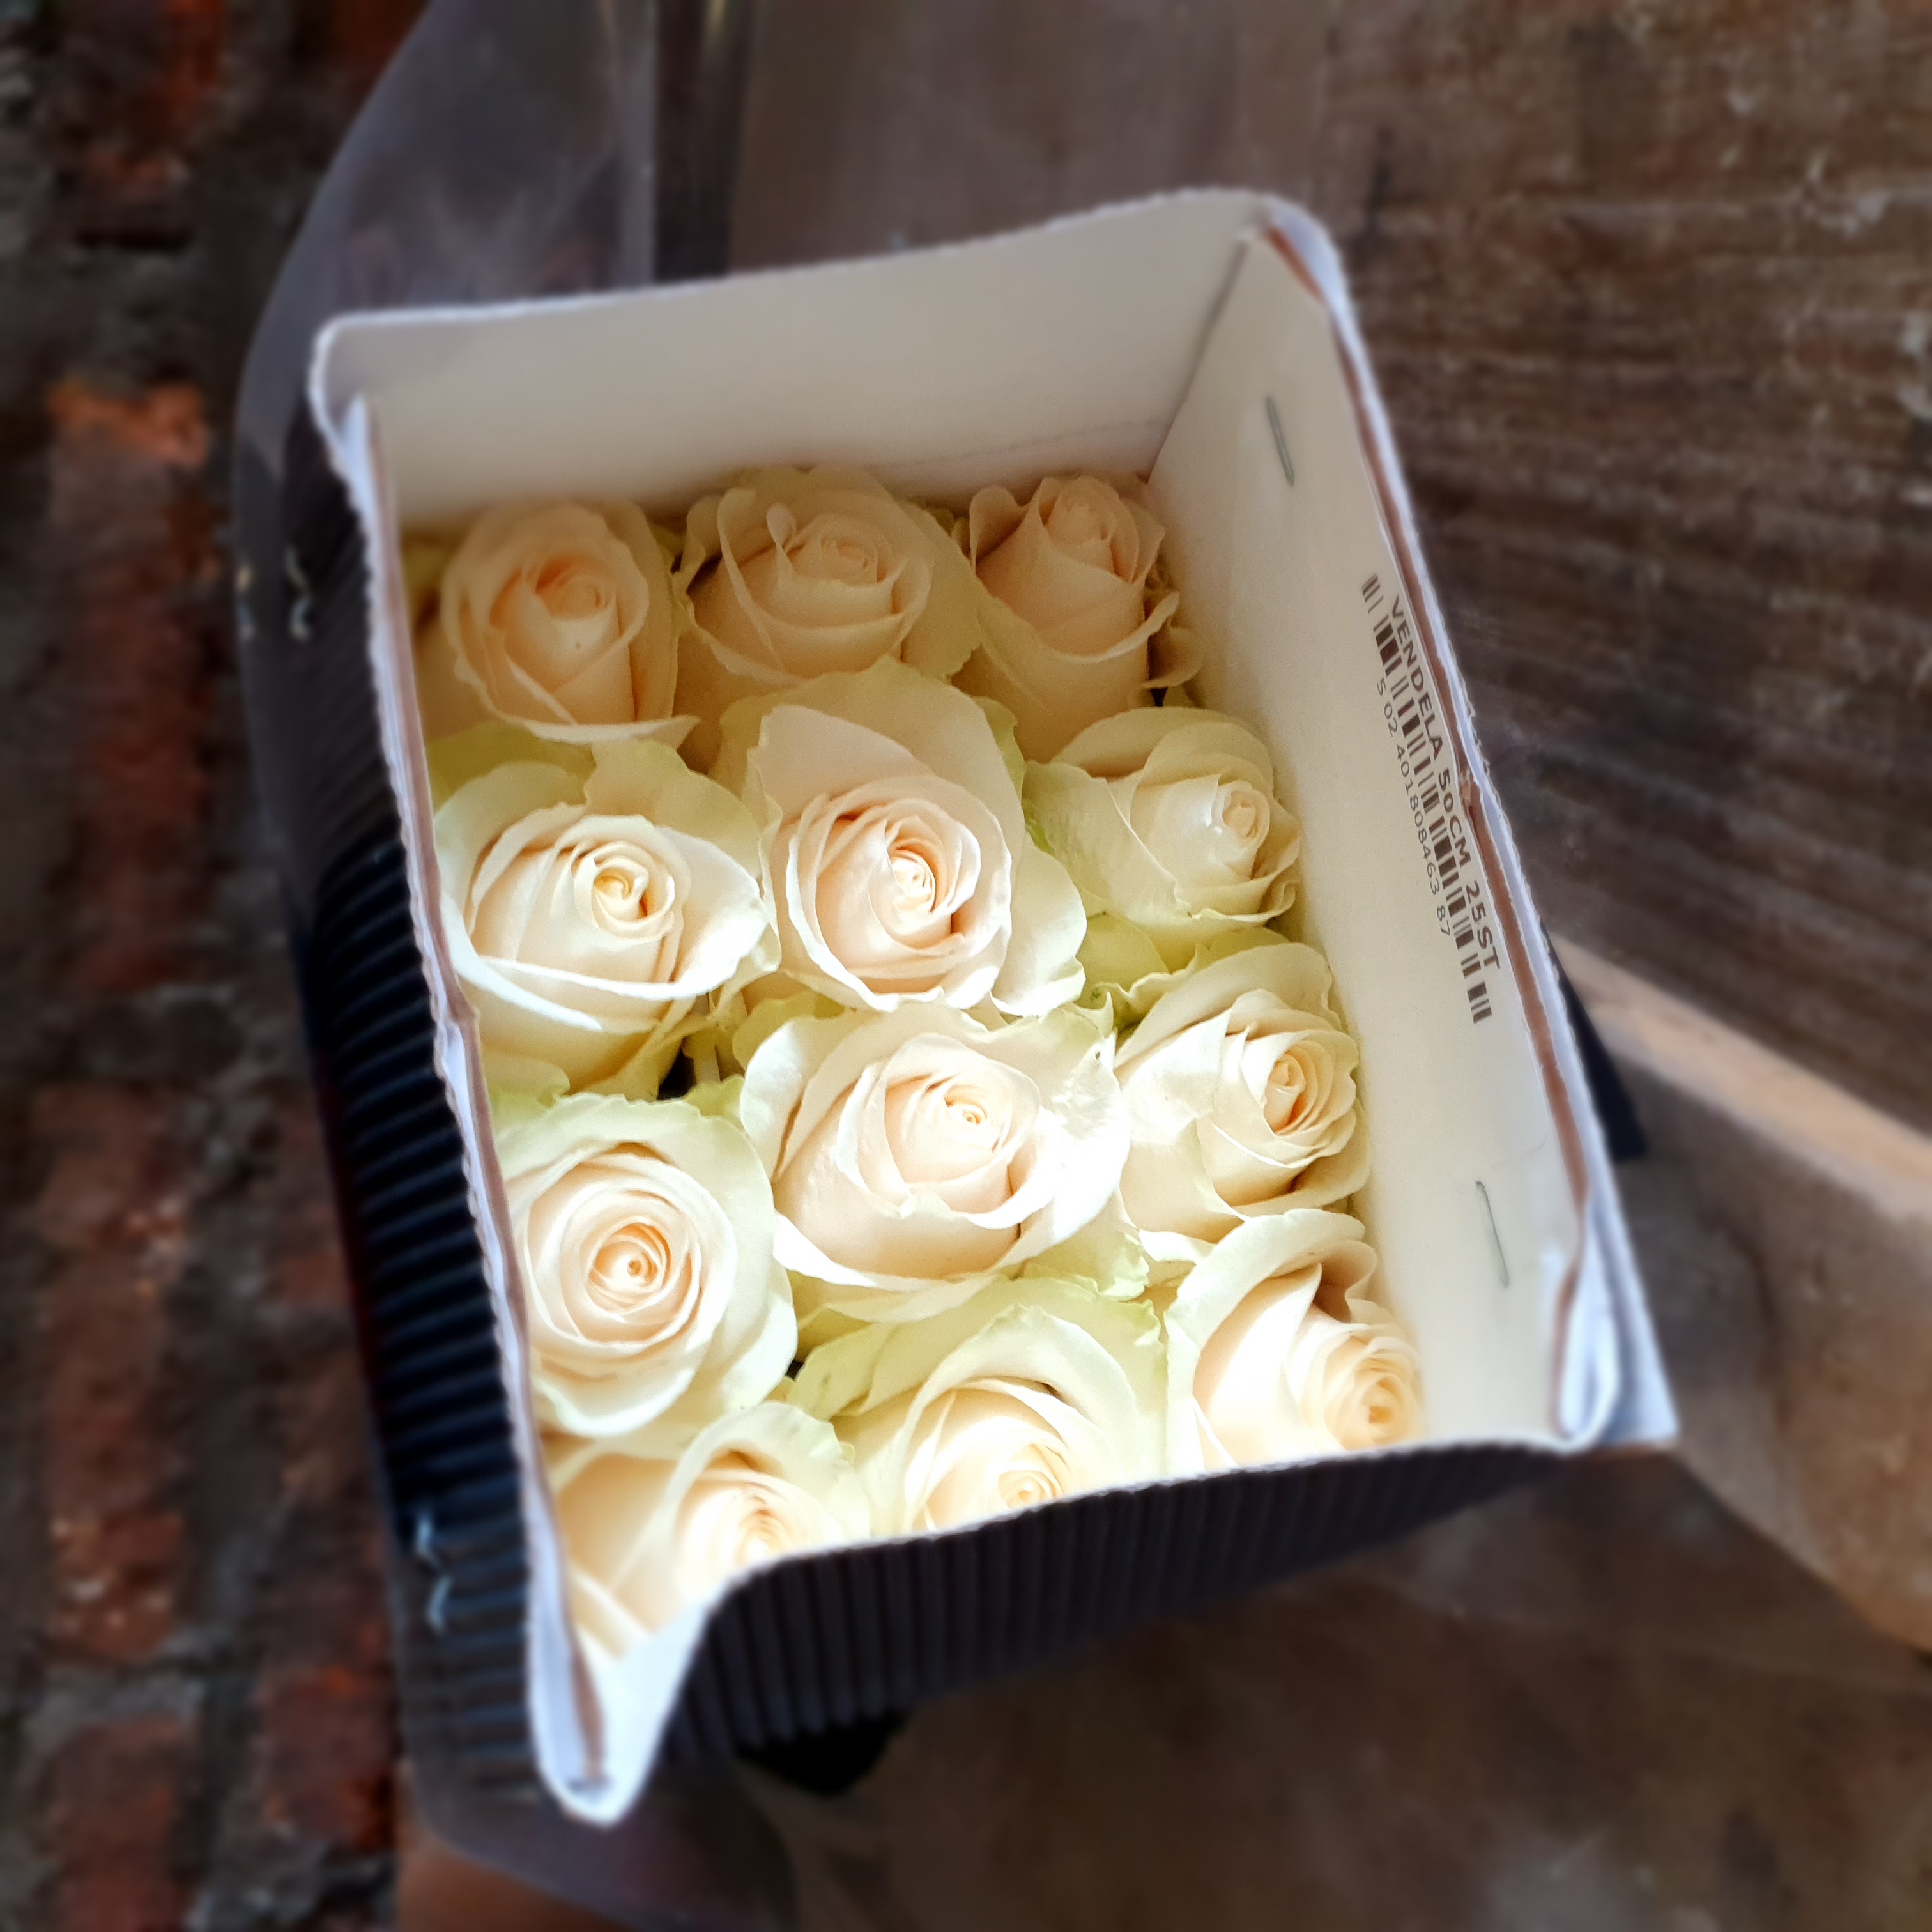 Pqt 25 varas 60 cms. Rosa Blanca | Regalar Flores, Envio de flores, desayunos y regalos a domicilio